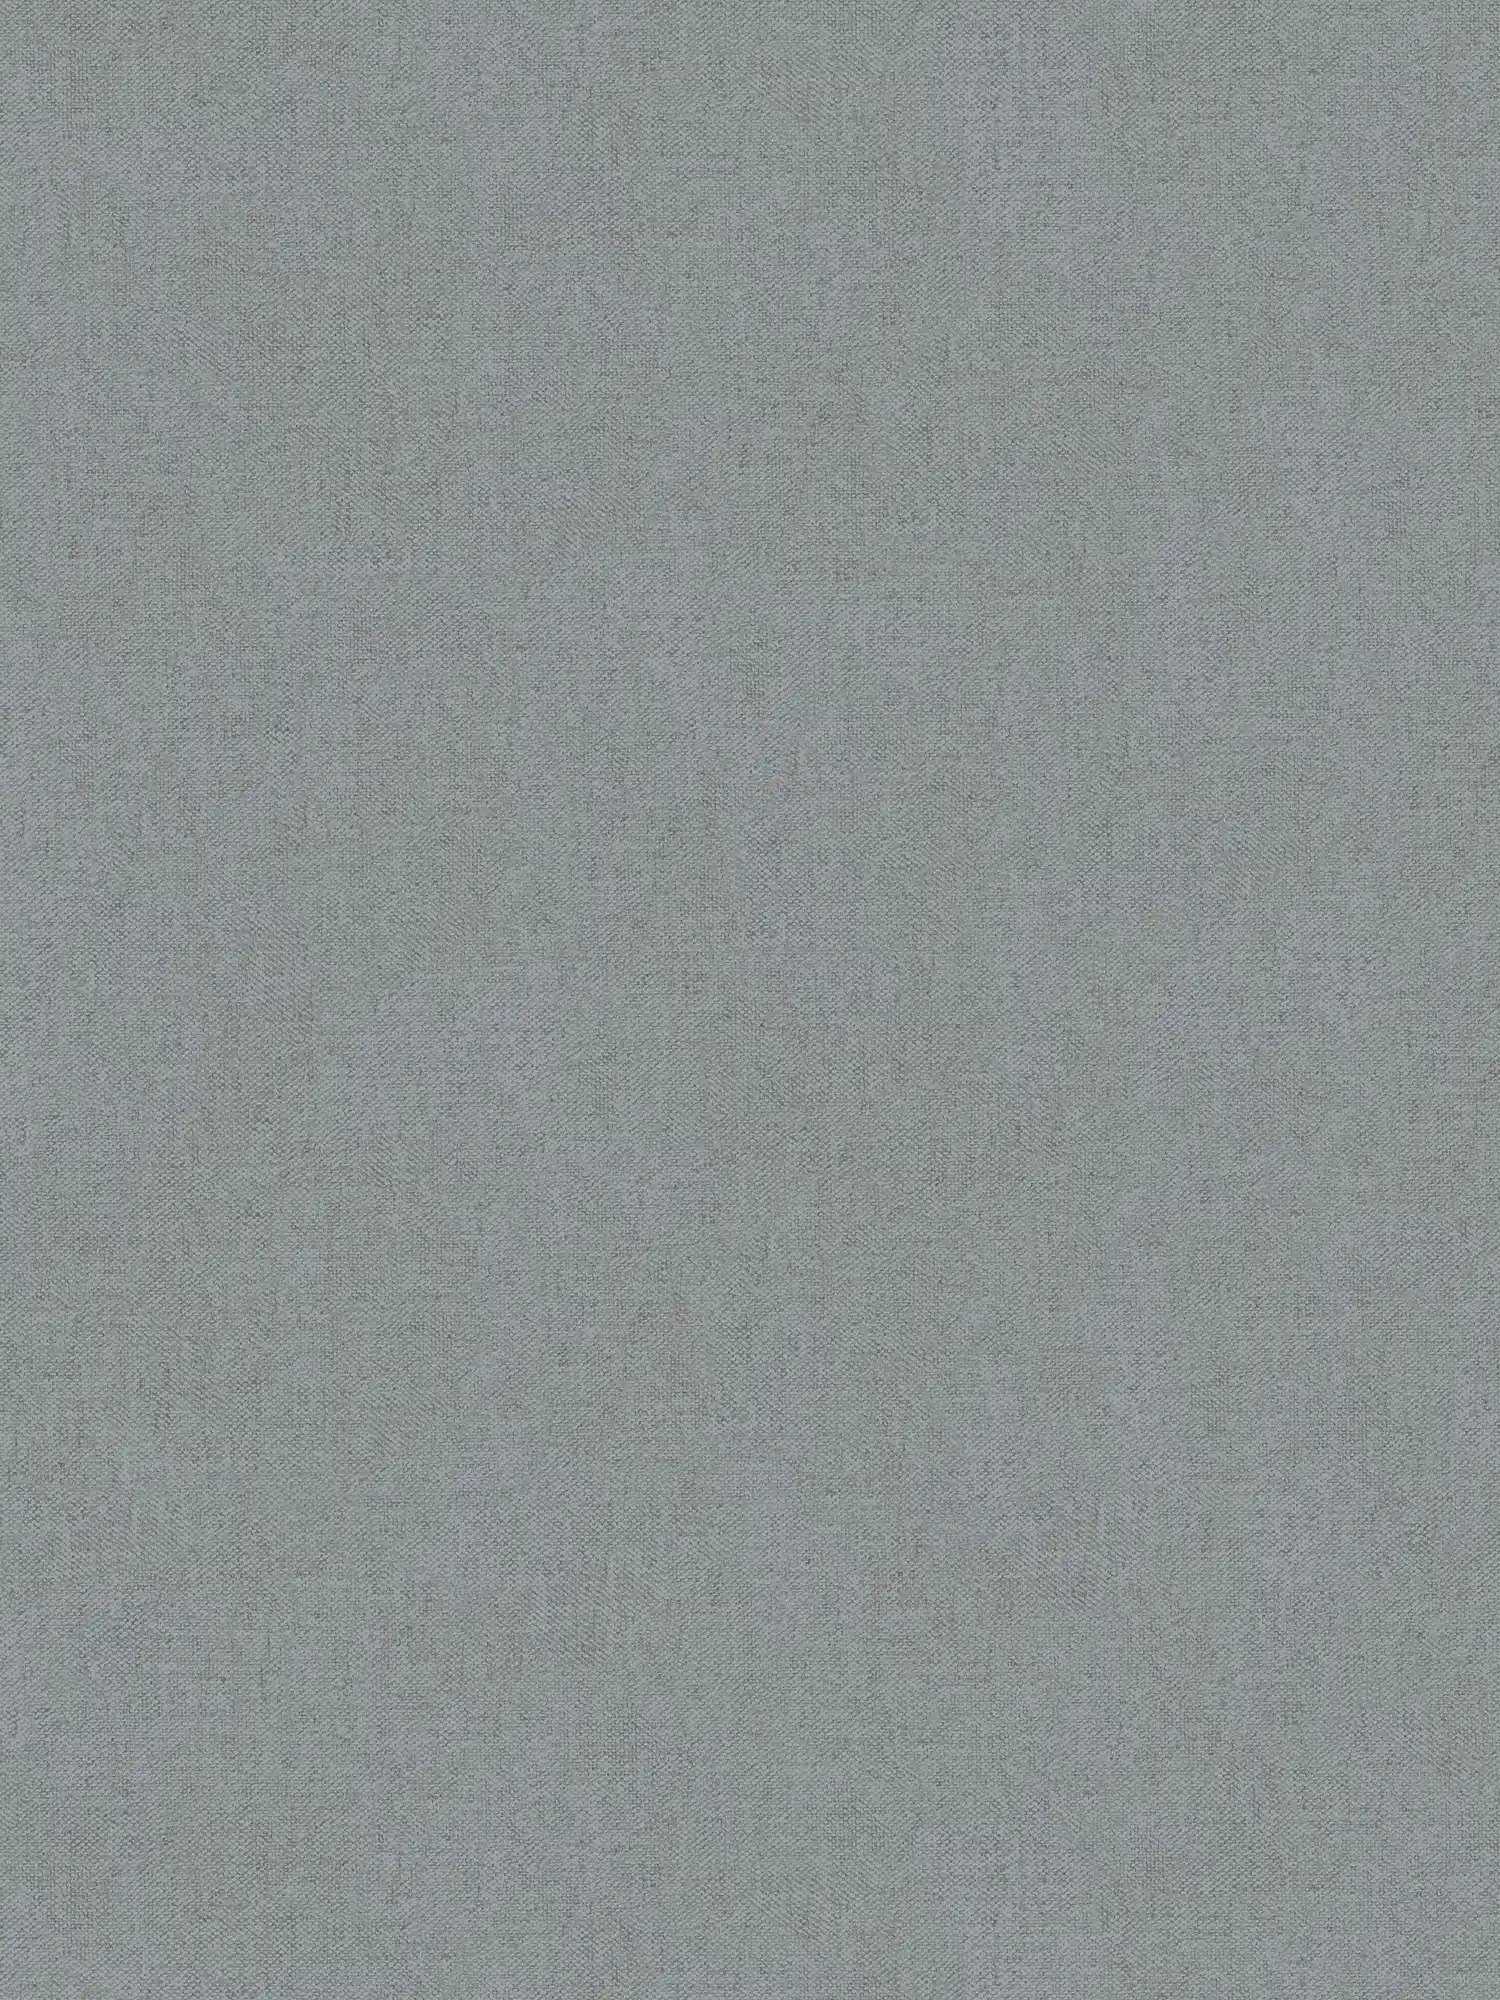 Papel pintado de aspecto textil de color gris loden con textura
